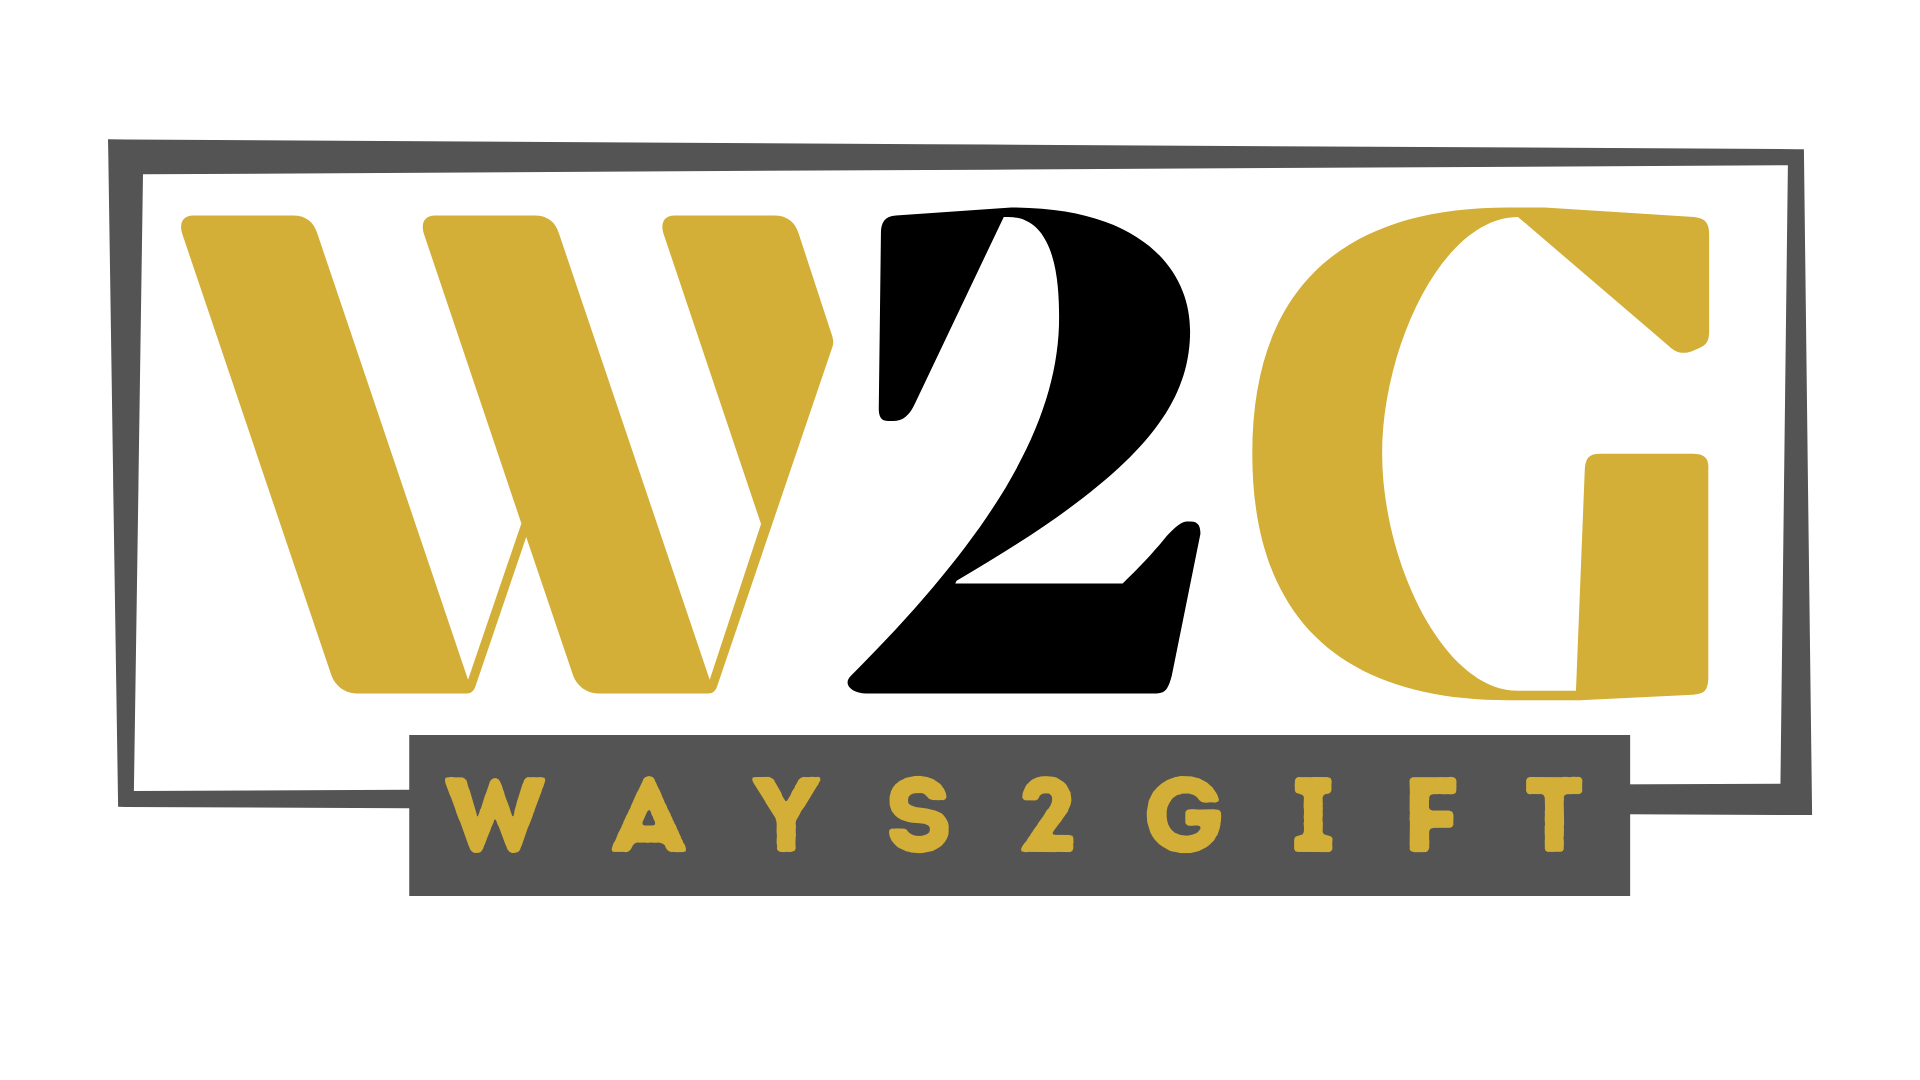 w2g logo